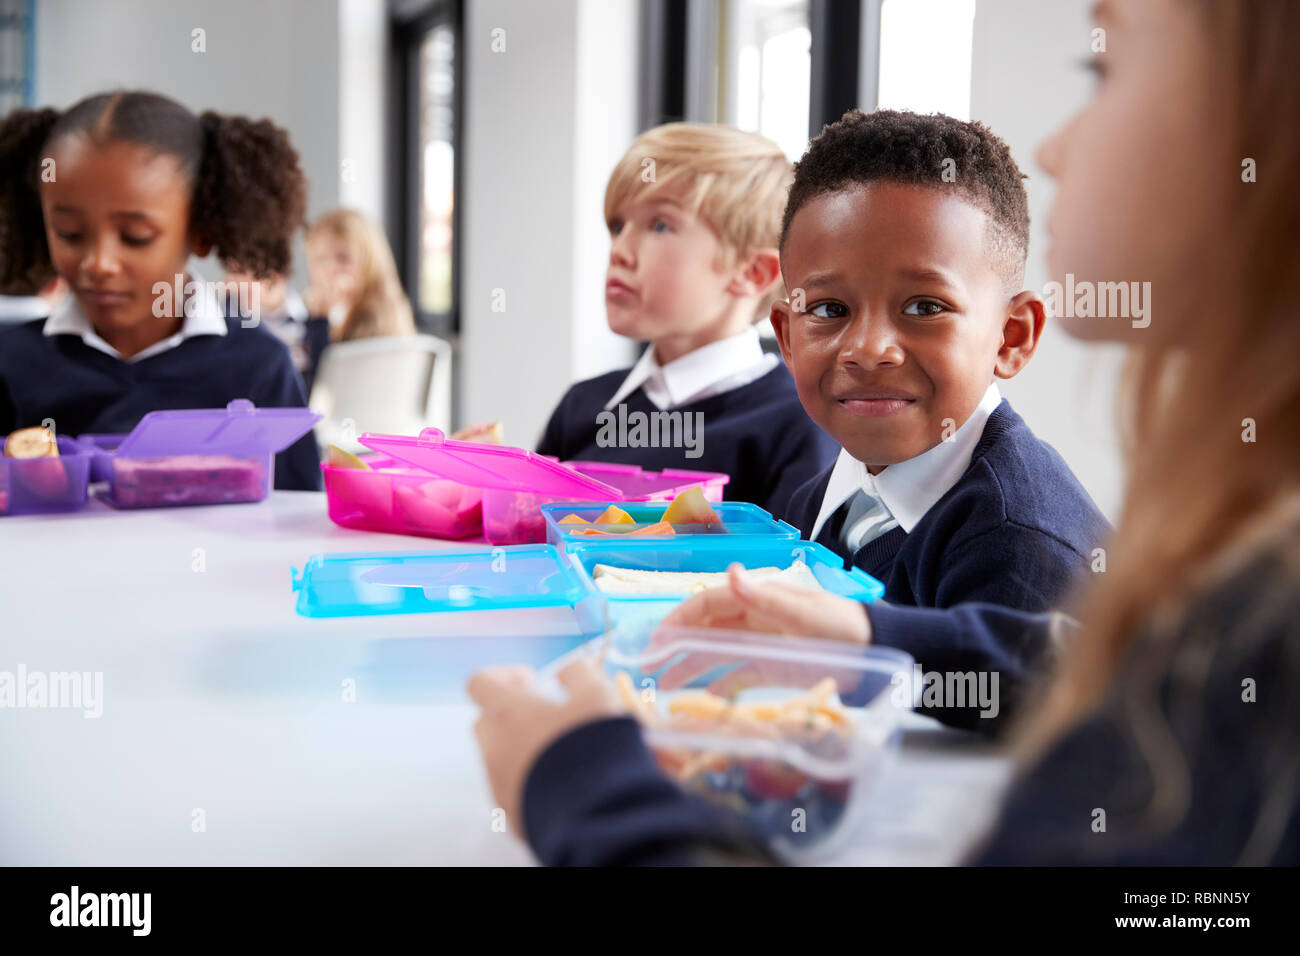 Les enfants de l'école primaire souriant assis à une table en train de manger leurs paniers-repas ensemble, selective focus Banque D'Images